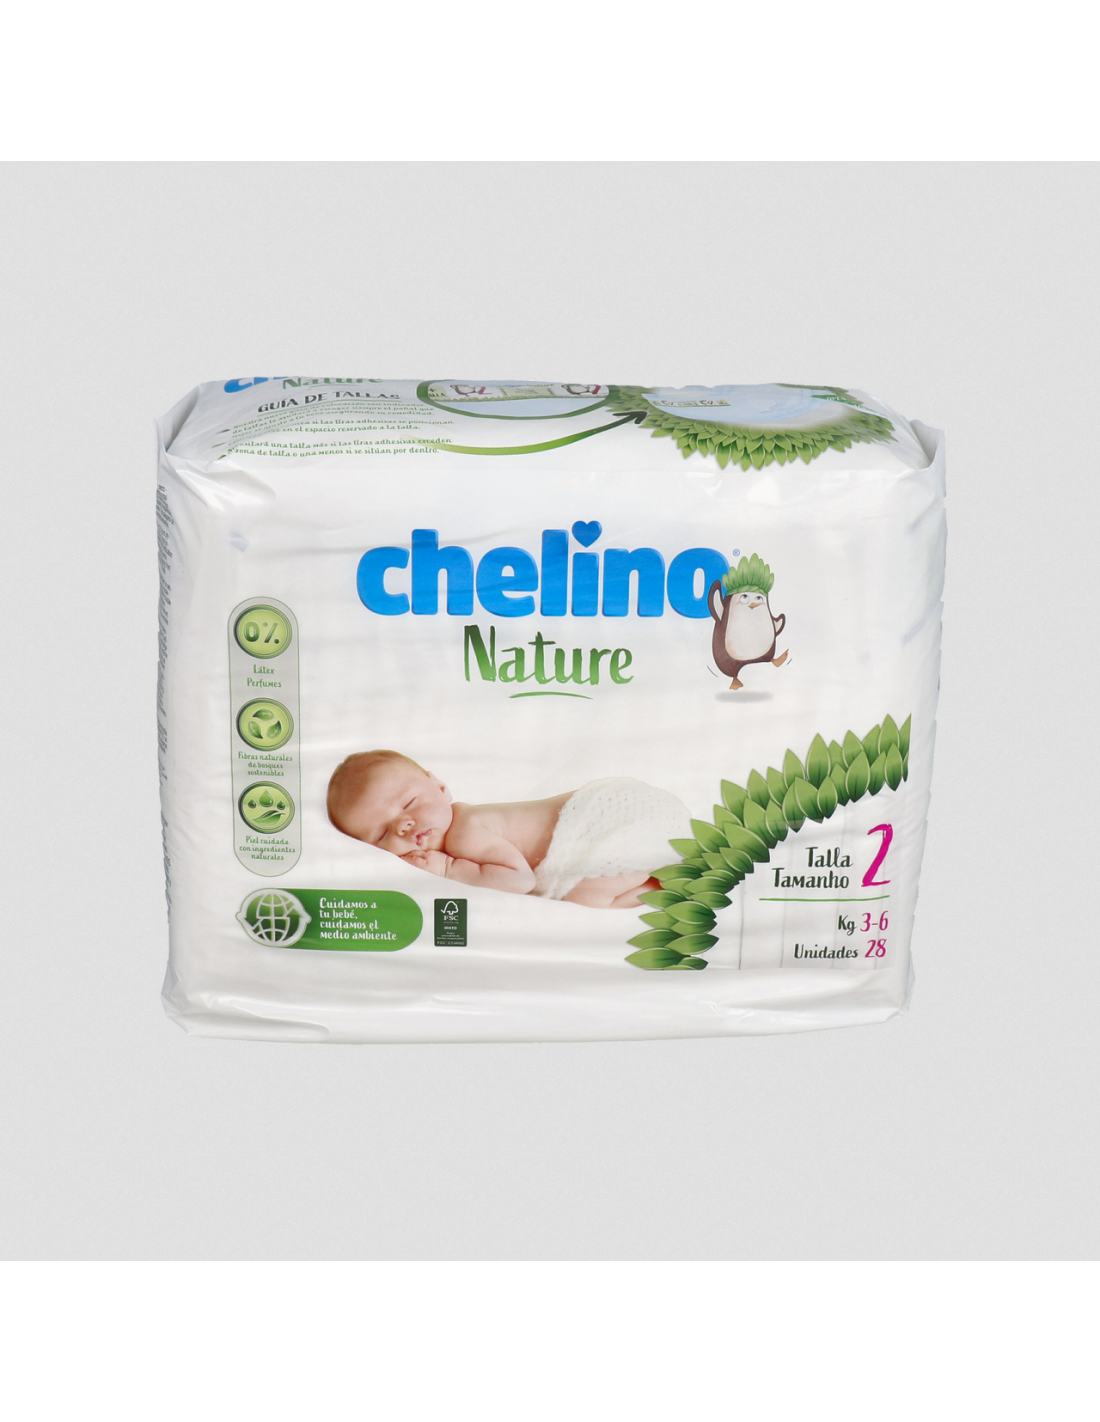 Chelino Pañal Inf Nature T/2 3-6 Kg 28 Un - Farmàcia Colldeforn